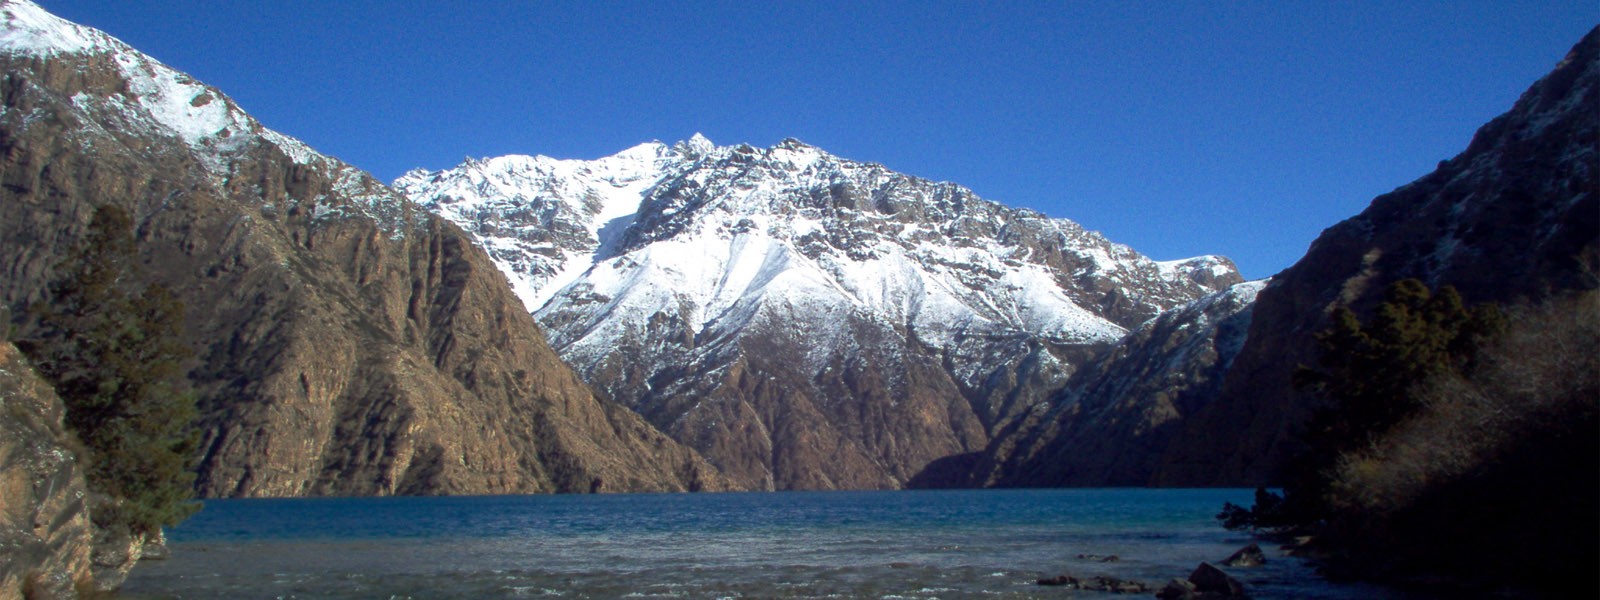 High Passes of Dolpo and Shey Phoksundo Lake Trekking - Dolpo Region